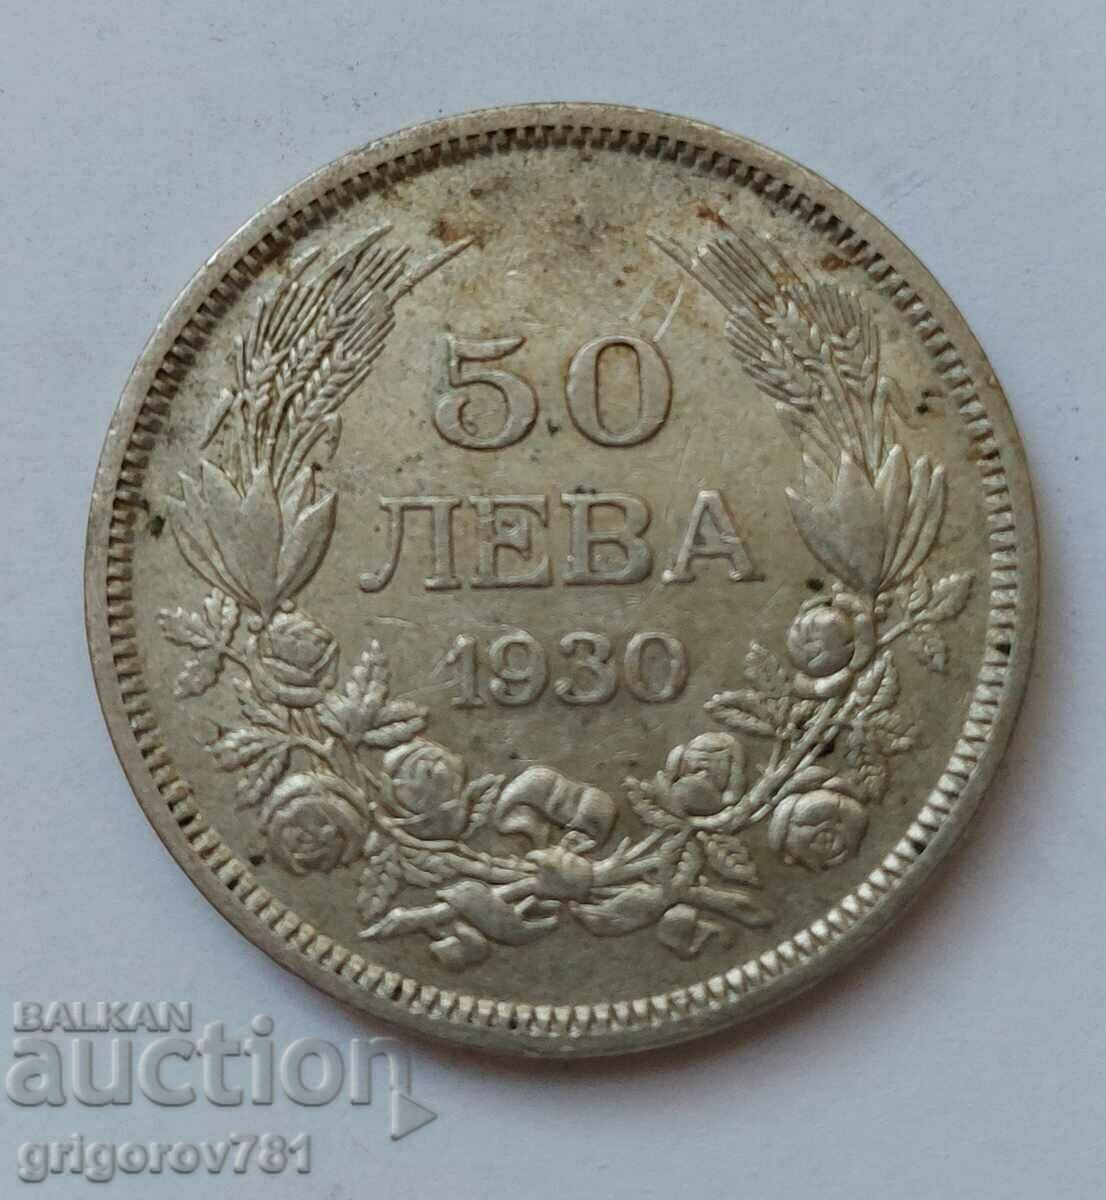 50 leva silver Bulgaria 1930 - silver coin #90